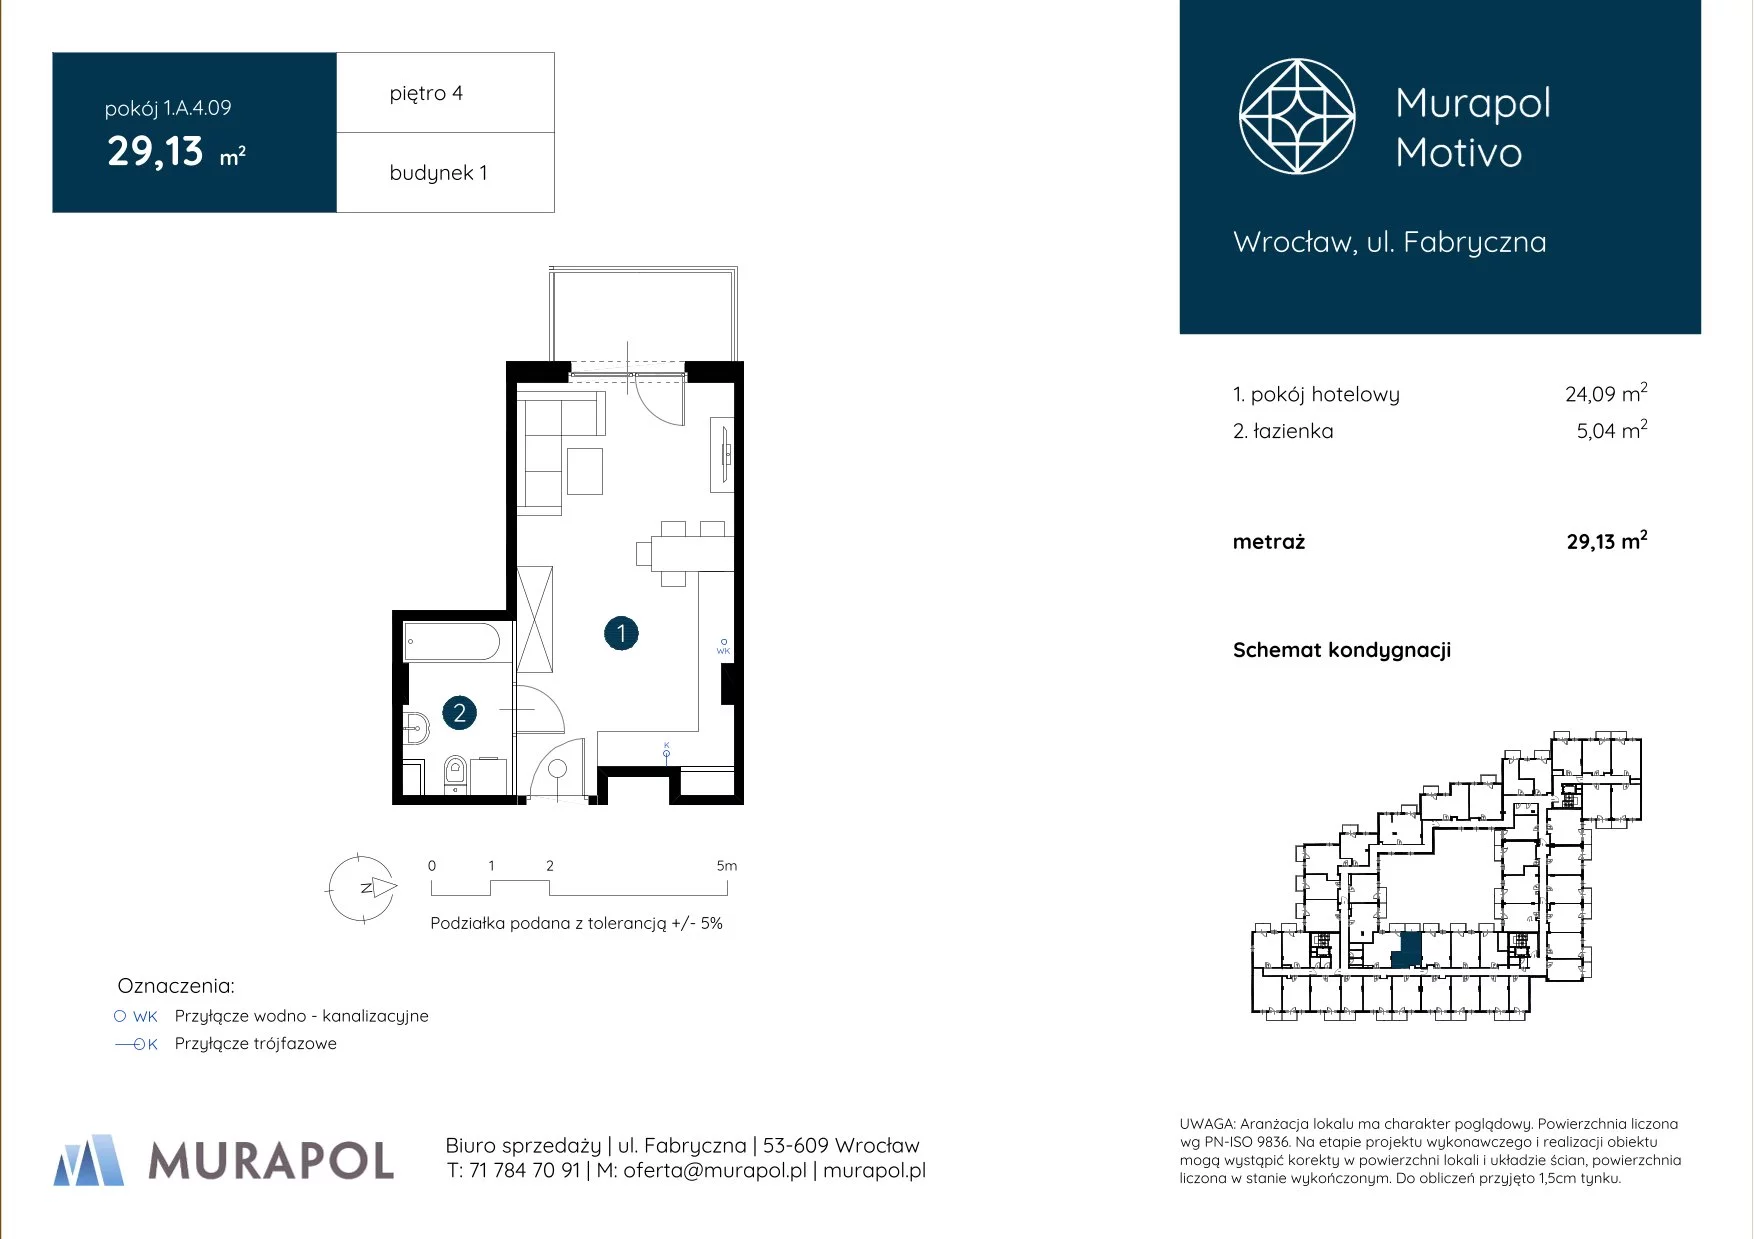 Apartament inwestycyjny 29,13 m², piętro 4, oferta nr 1.A.4.09, Murapol Motivo, Wrocław, Muchobór Mały, Fabryczna, ul. Fabryczna